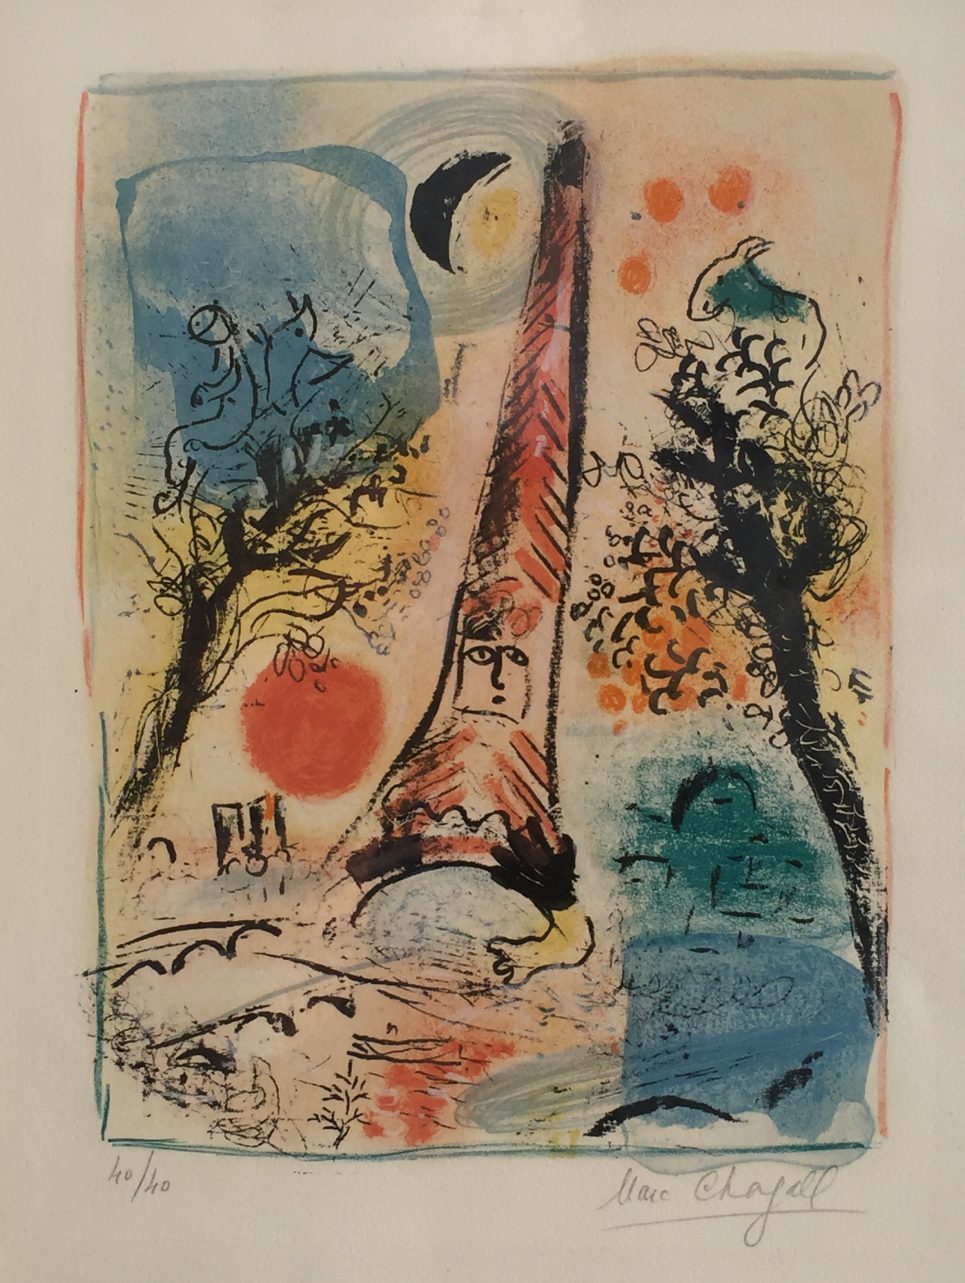 Marc Chagall - Vision de Paris